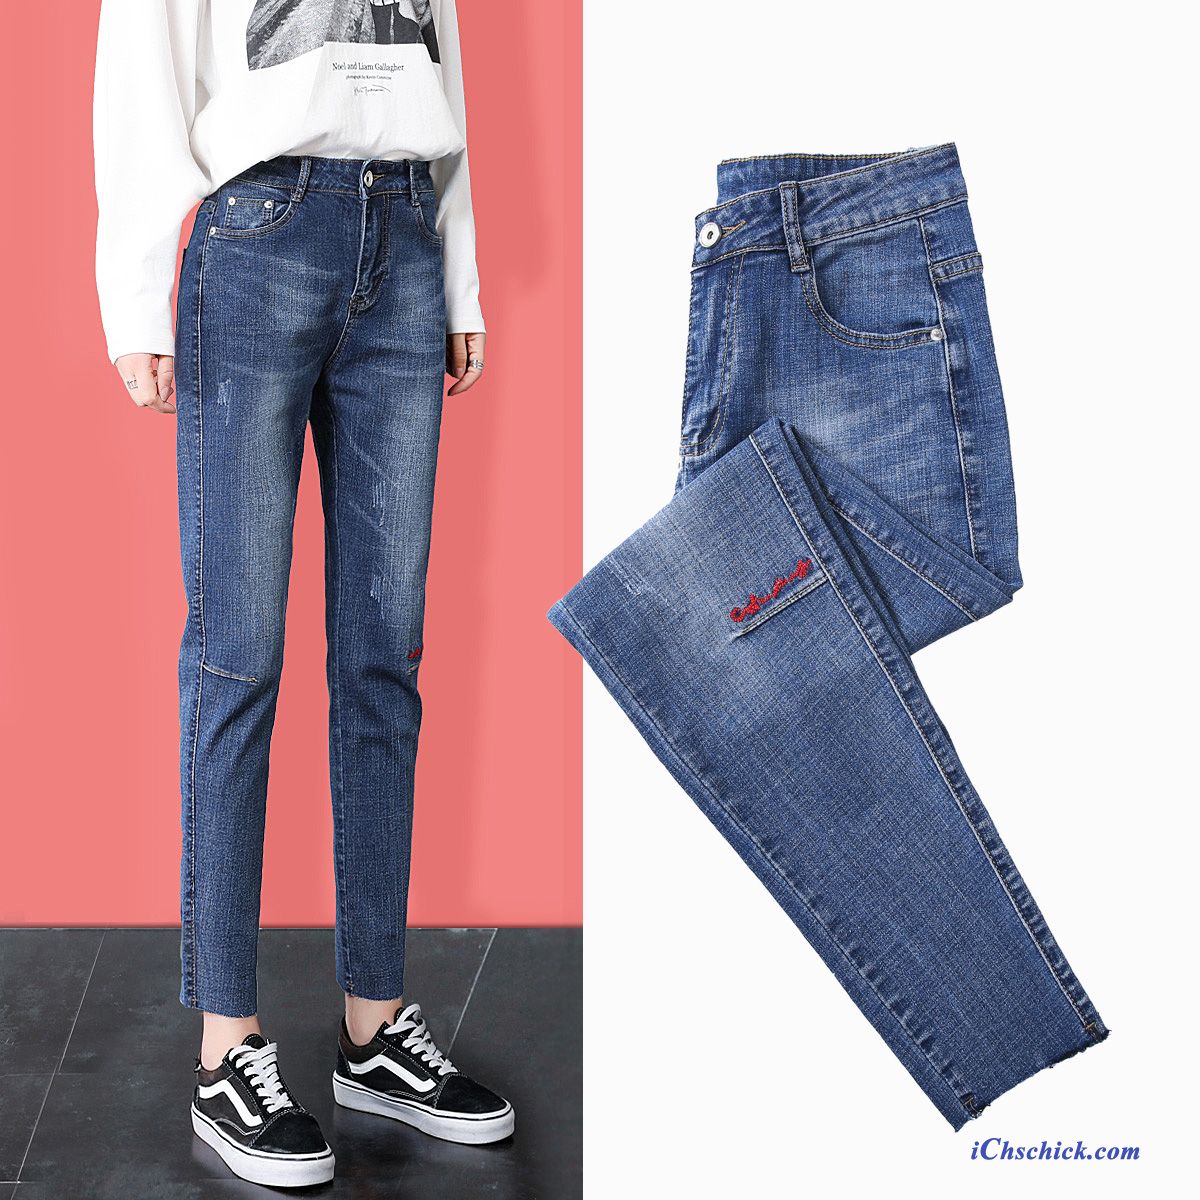 Bekleidung Jeans Gerade Stickerei Hohe Taille Damen Herbst Blau Rot Online